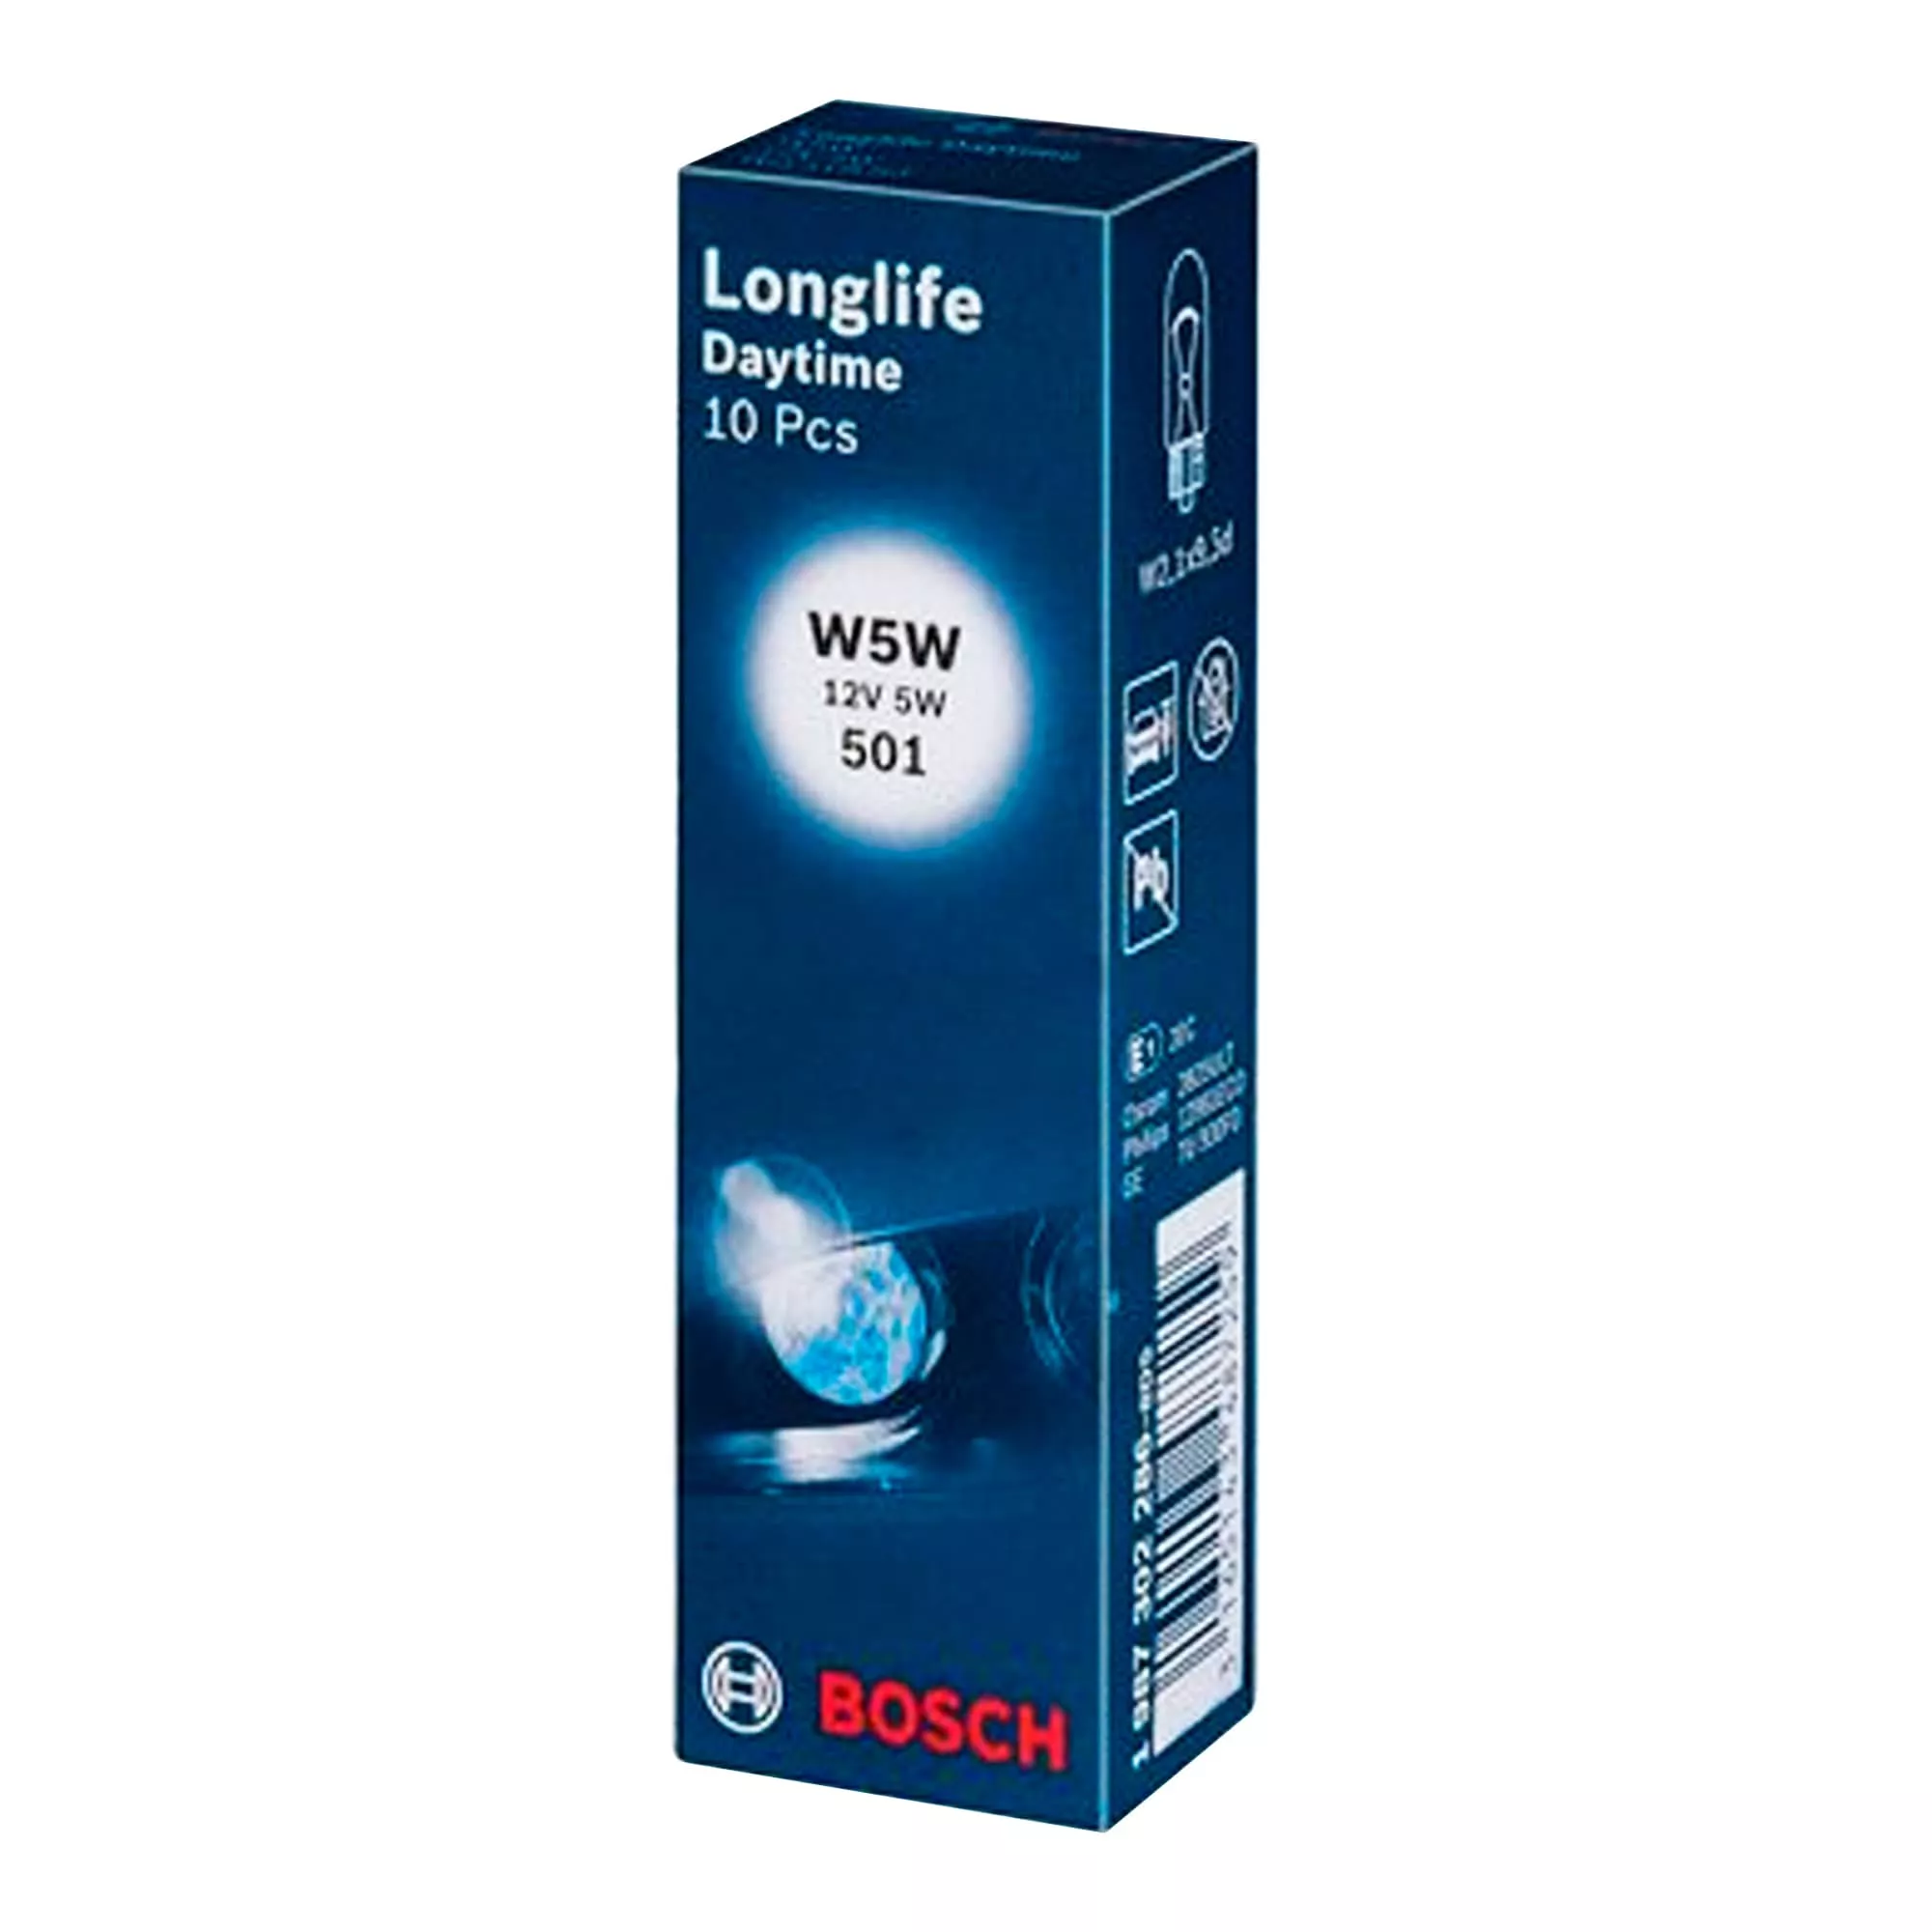 Лампа Bosch Longlife Daytime W5W 12V 5W 1 987 302 286